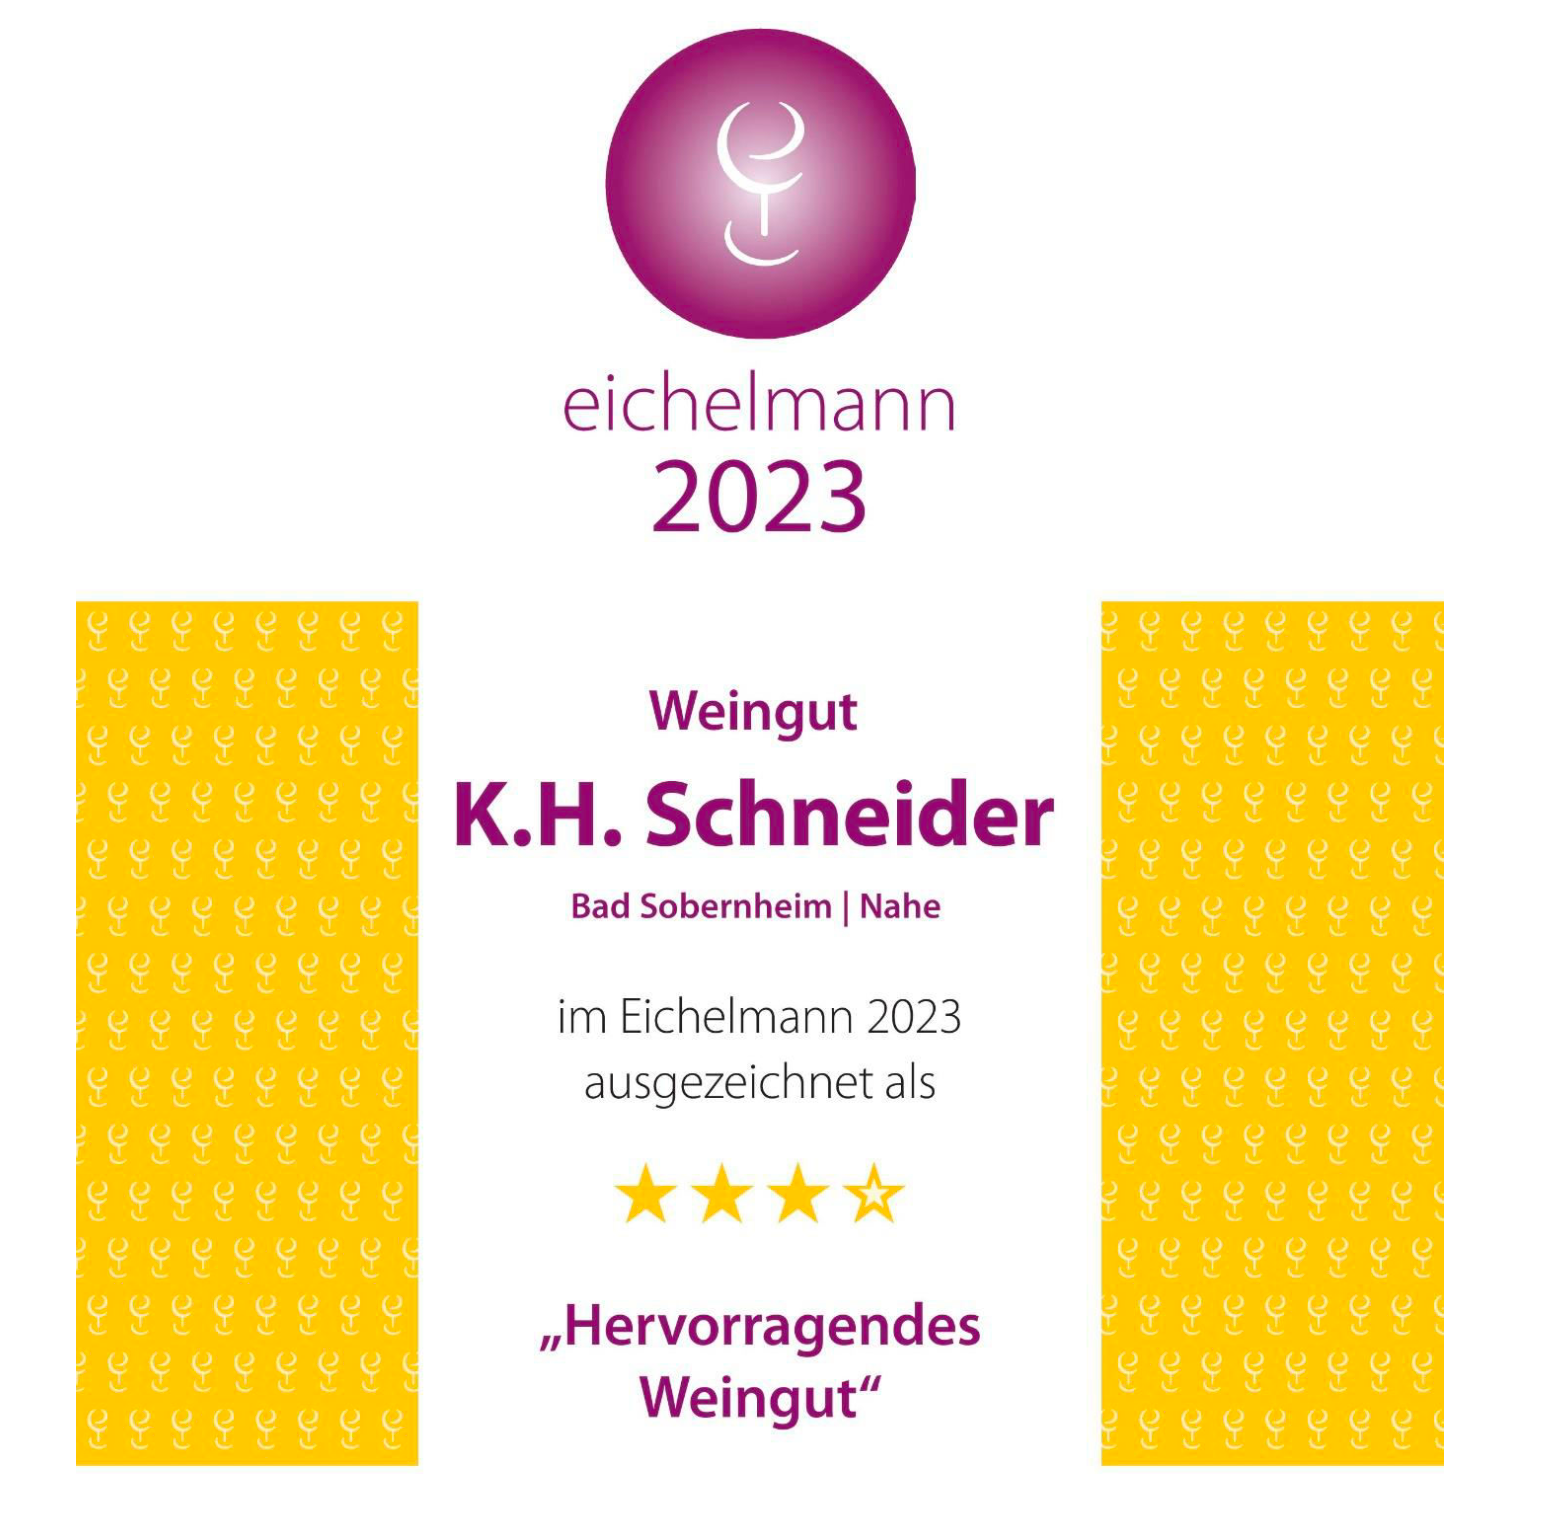 De beroemde Eichelmann wijngids geeft wijnhuis KH Schneider 4 sterren: uitstekend!